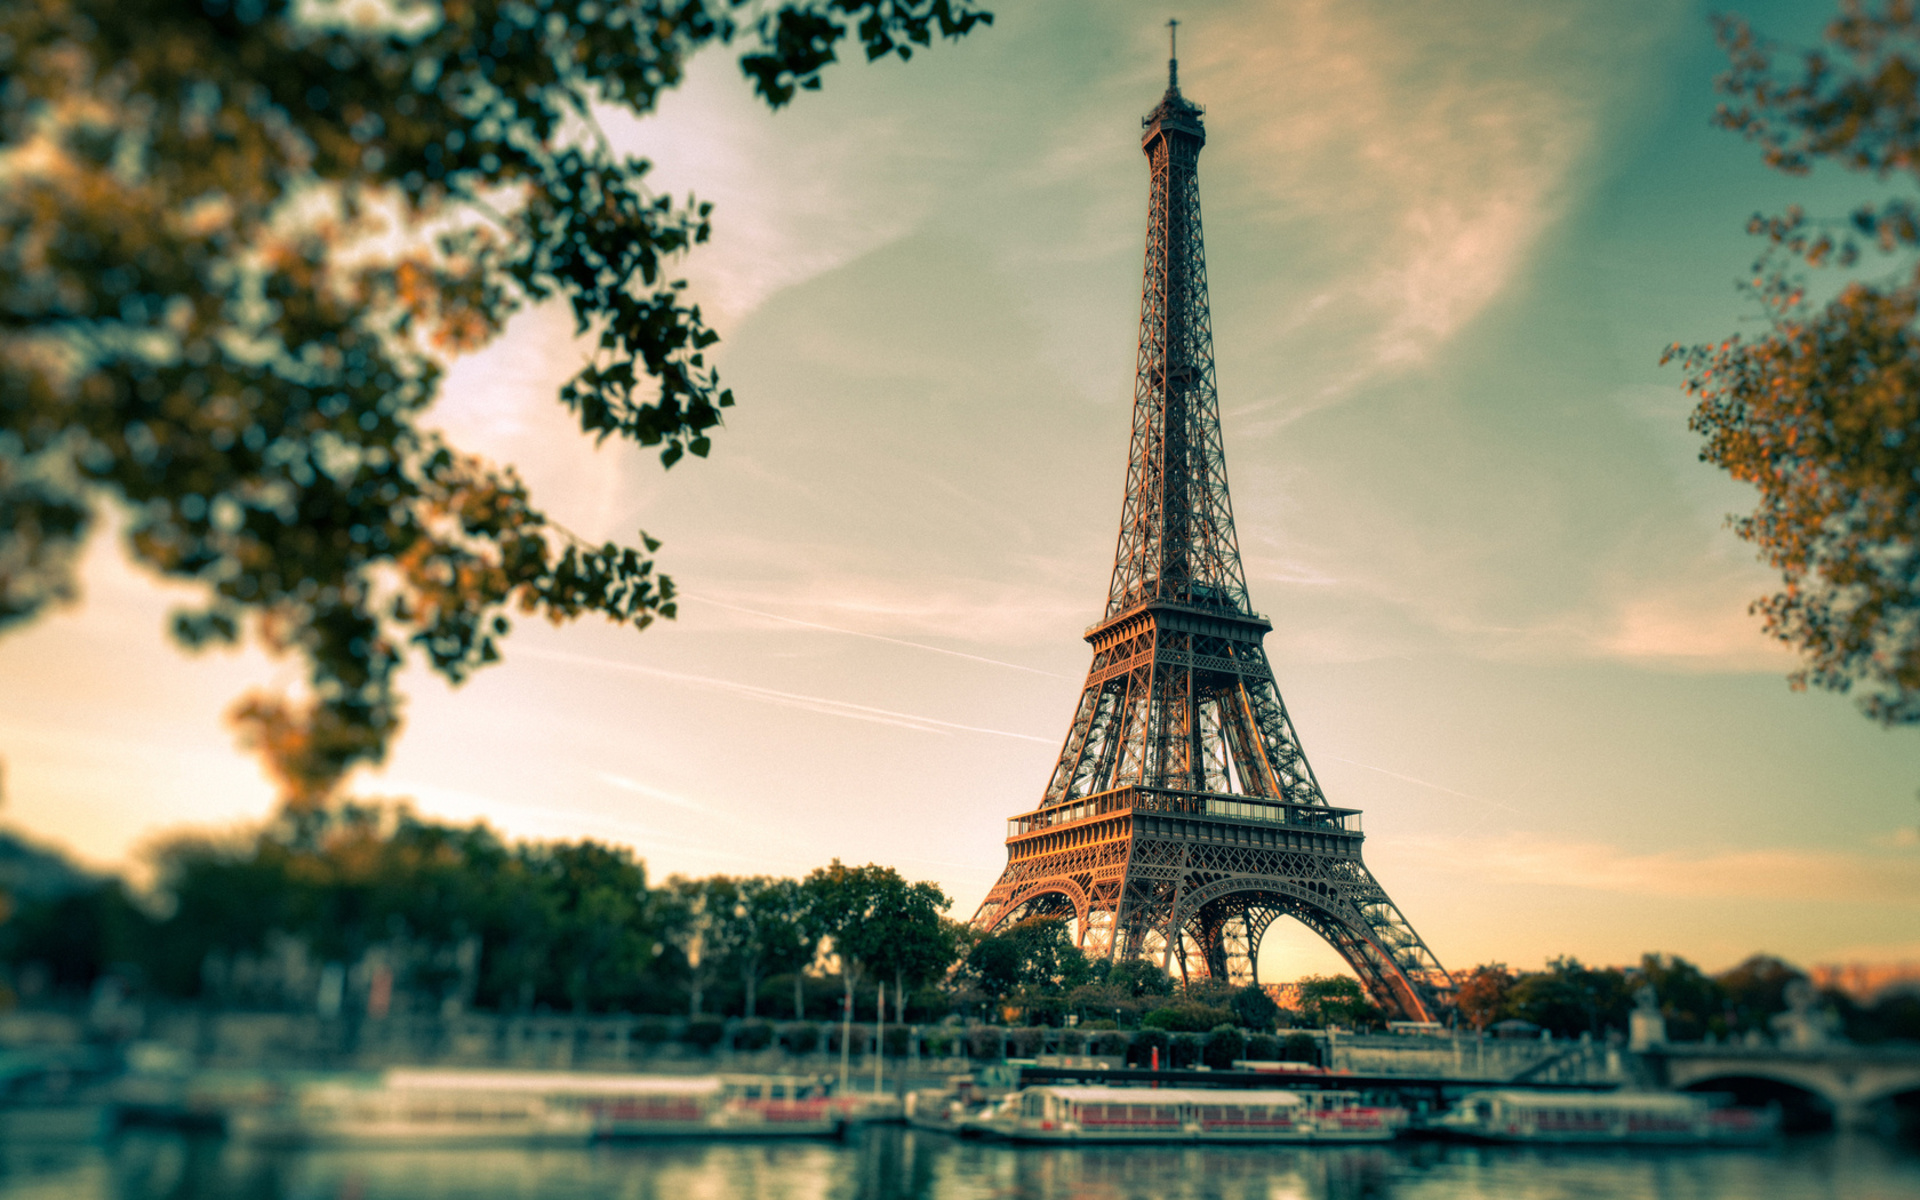 Tháp Eiffel luôn được coi là kỳ quan kiến trúc đẹp nhất thế giới. Hãy đến và chiêm ngưỡng hình ảnh tuyệt đẹp của tháp Eiffel vào từng giờ trong ngày và thấy sự độc đáo và uy nghi của kiệt tác này.